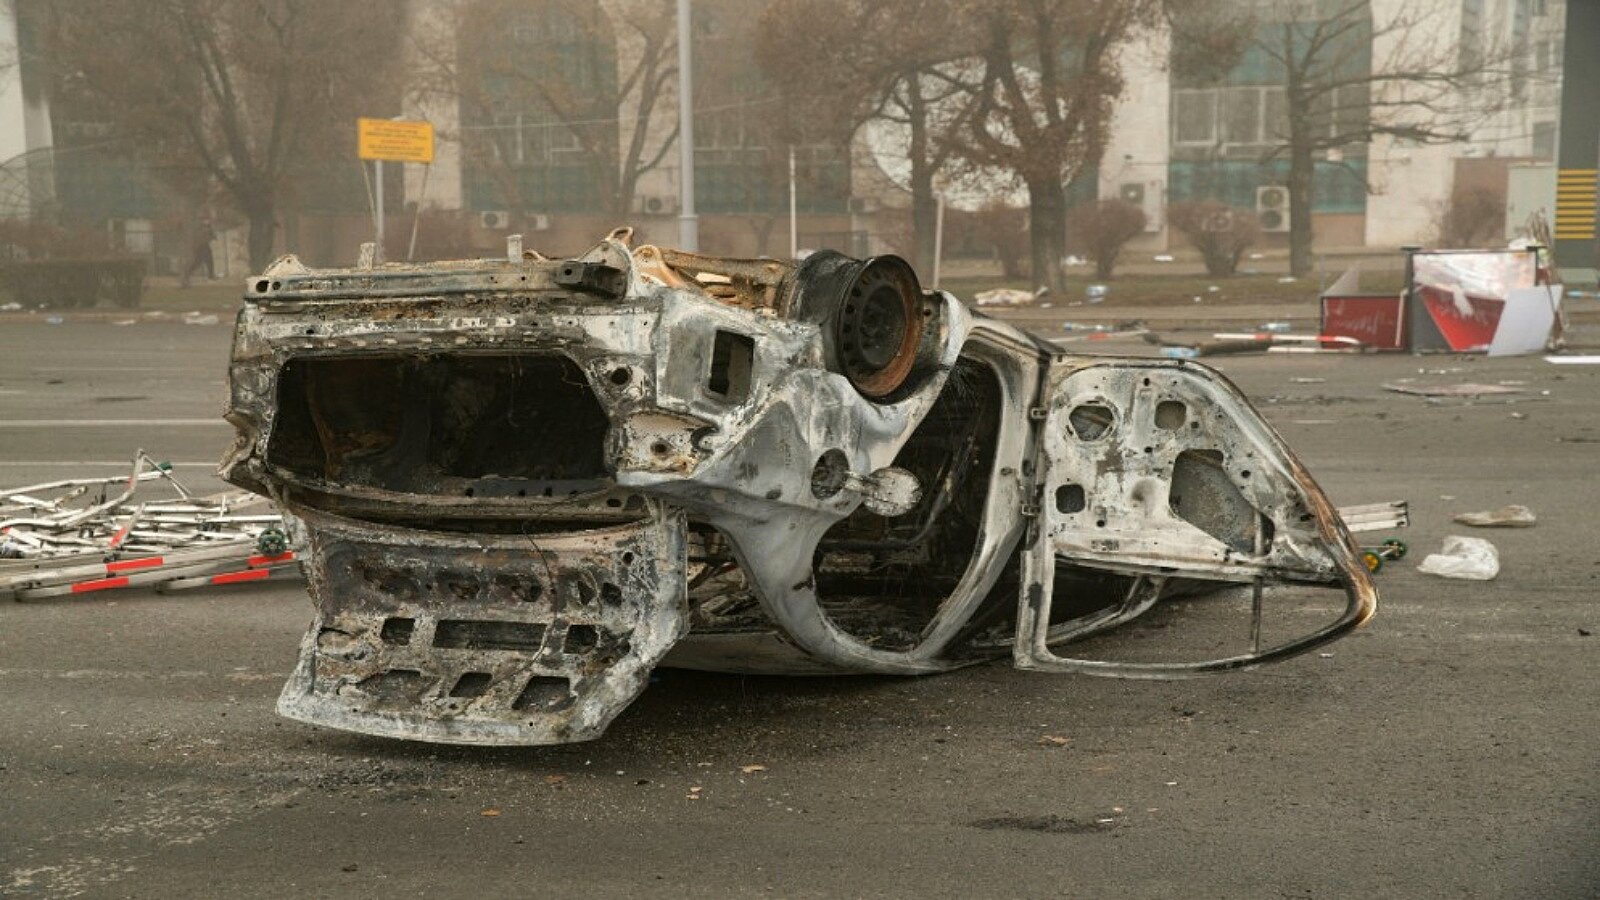 سيارة مدمرة بعد الاضطرابات في ألماتي، كازاخستان